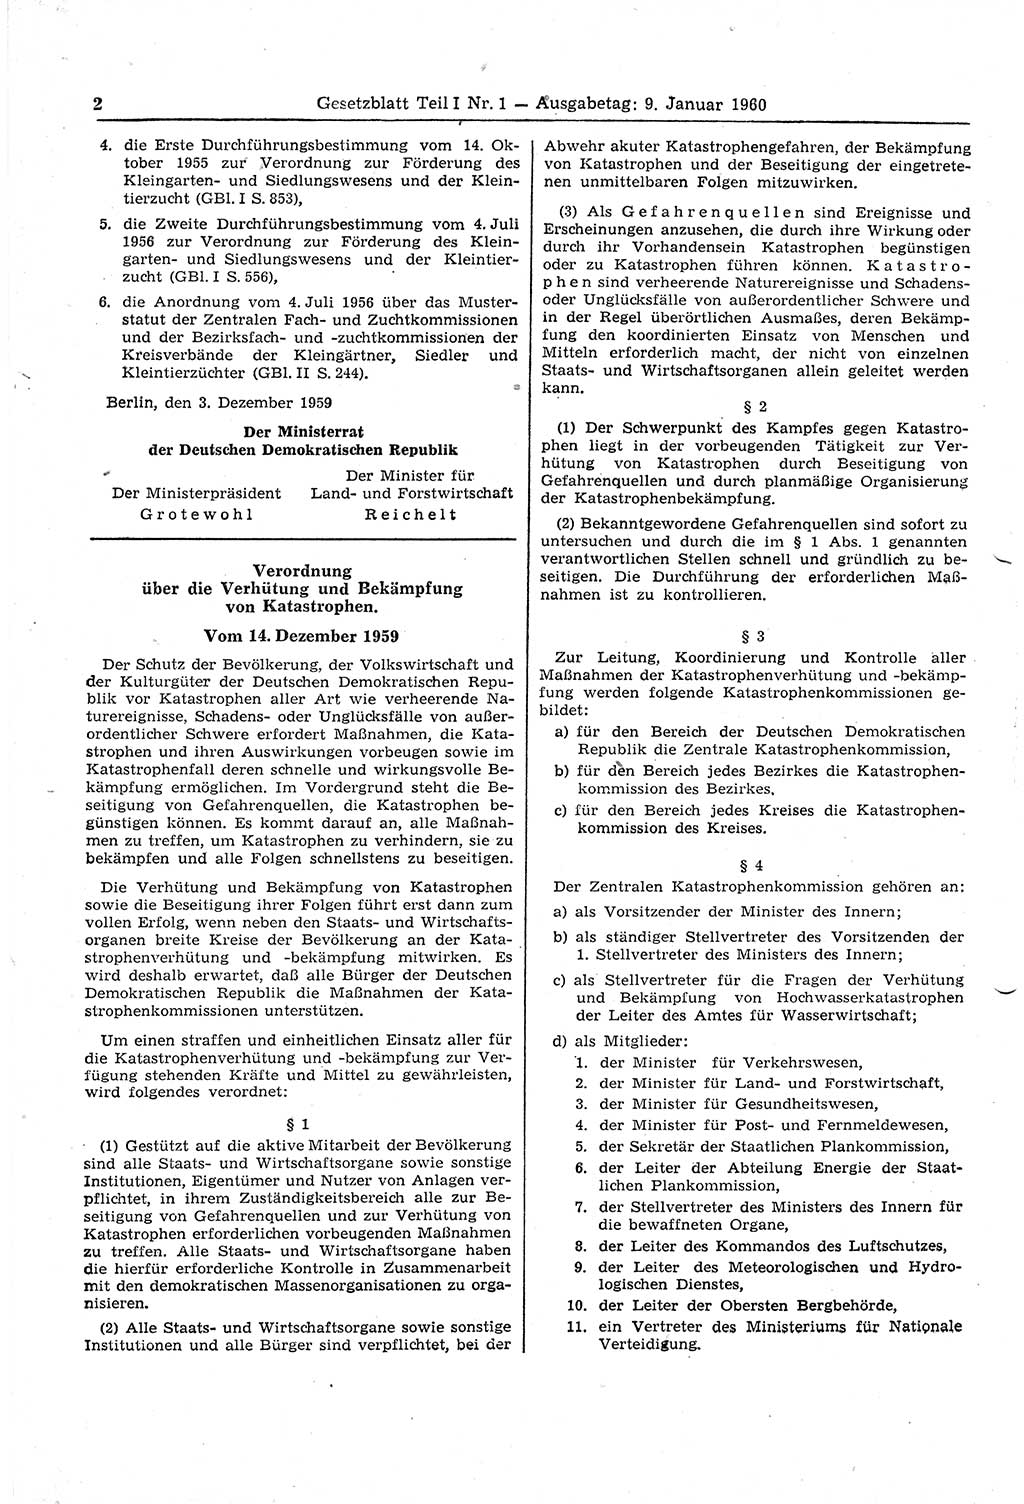 Gesetzblatt (GBl.) der Deutschen Demokratischen Republik (DDR) Teil Ⅰ 1960, Seite 2 (GBl. DDR Ⅰ 1960, S. 2)